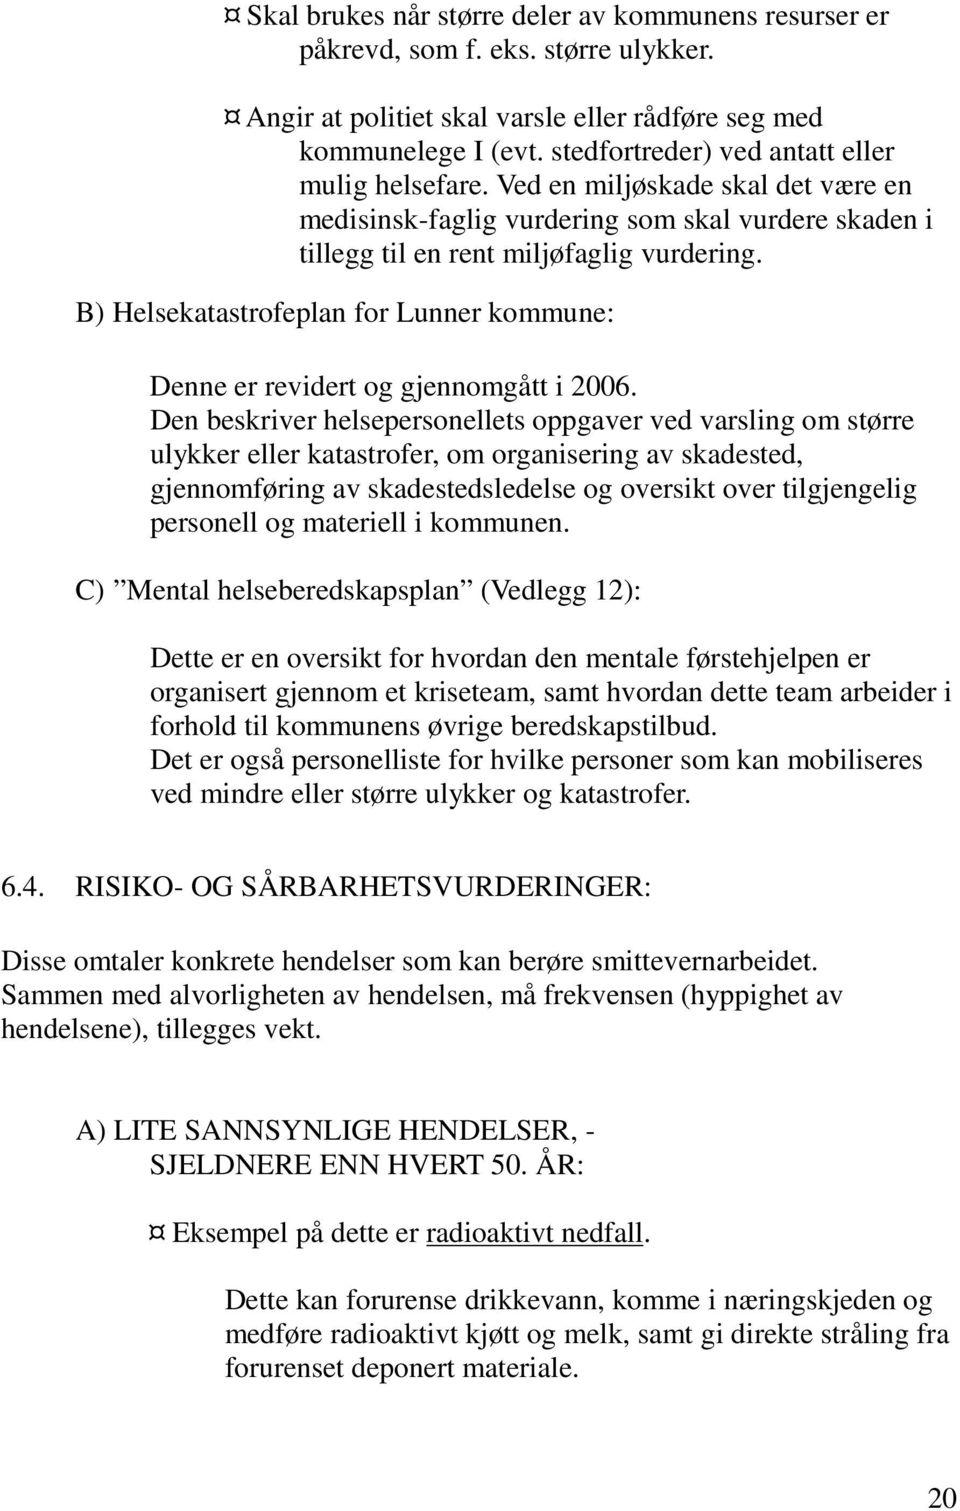 B) Helsekatastrofeplan for Lunner kommune: Denne er revidert og gjennomgått i 2006.